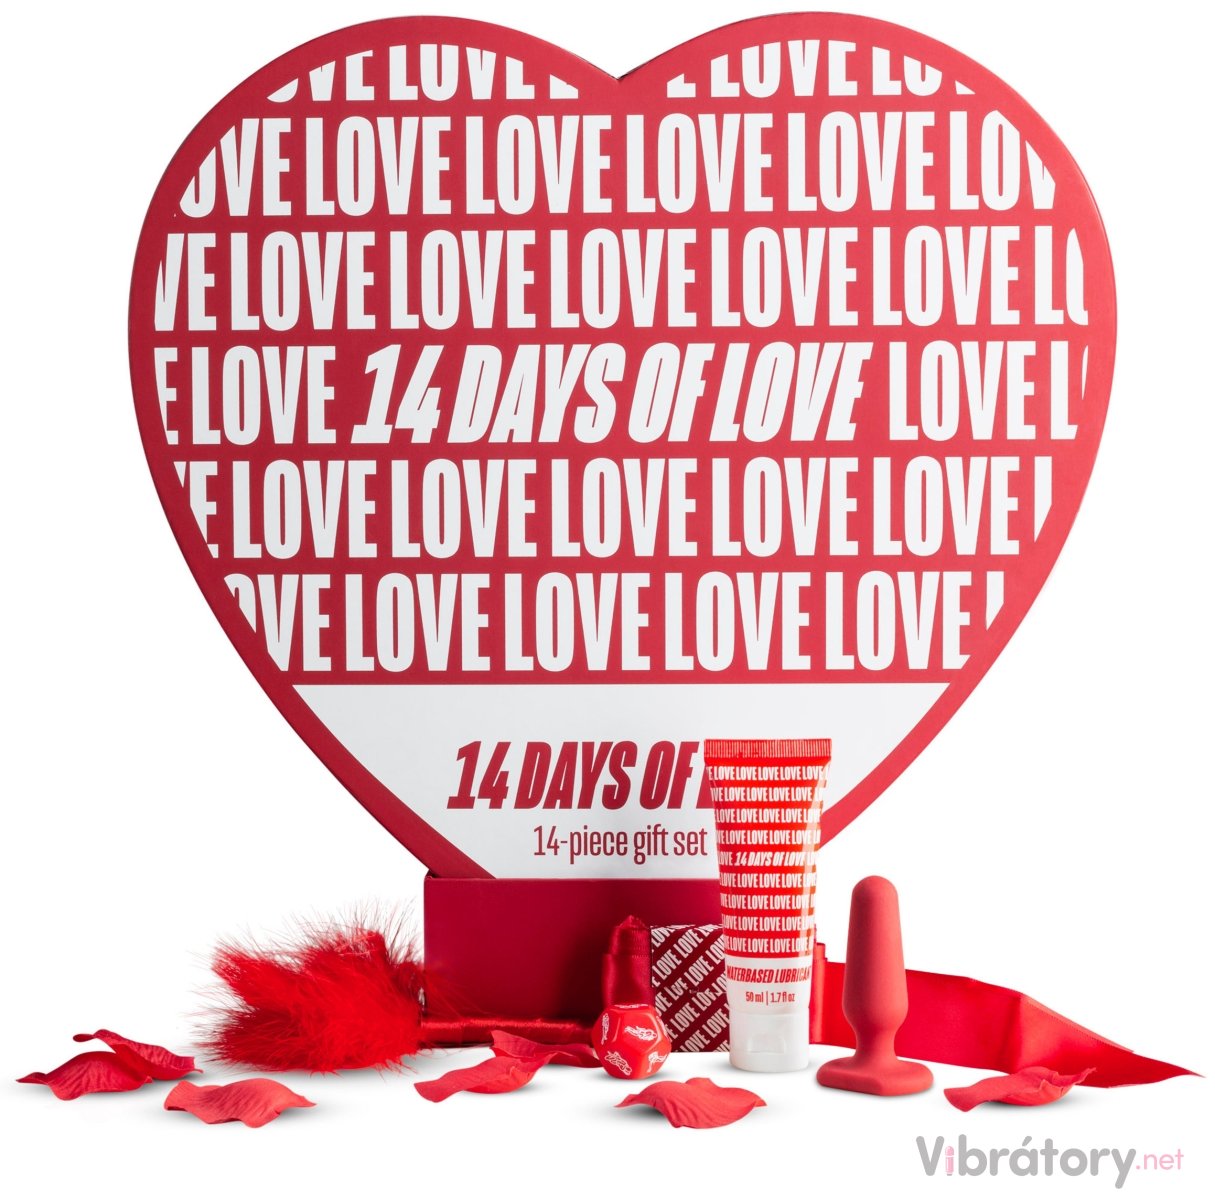 Dárková erotická sada LoveBoxxx 14 Days of Love